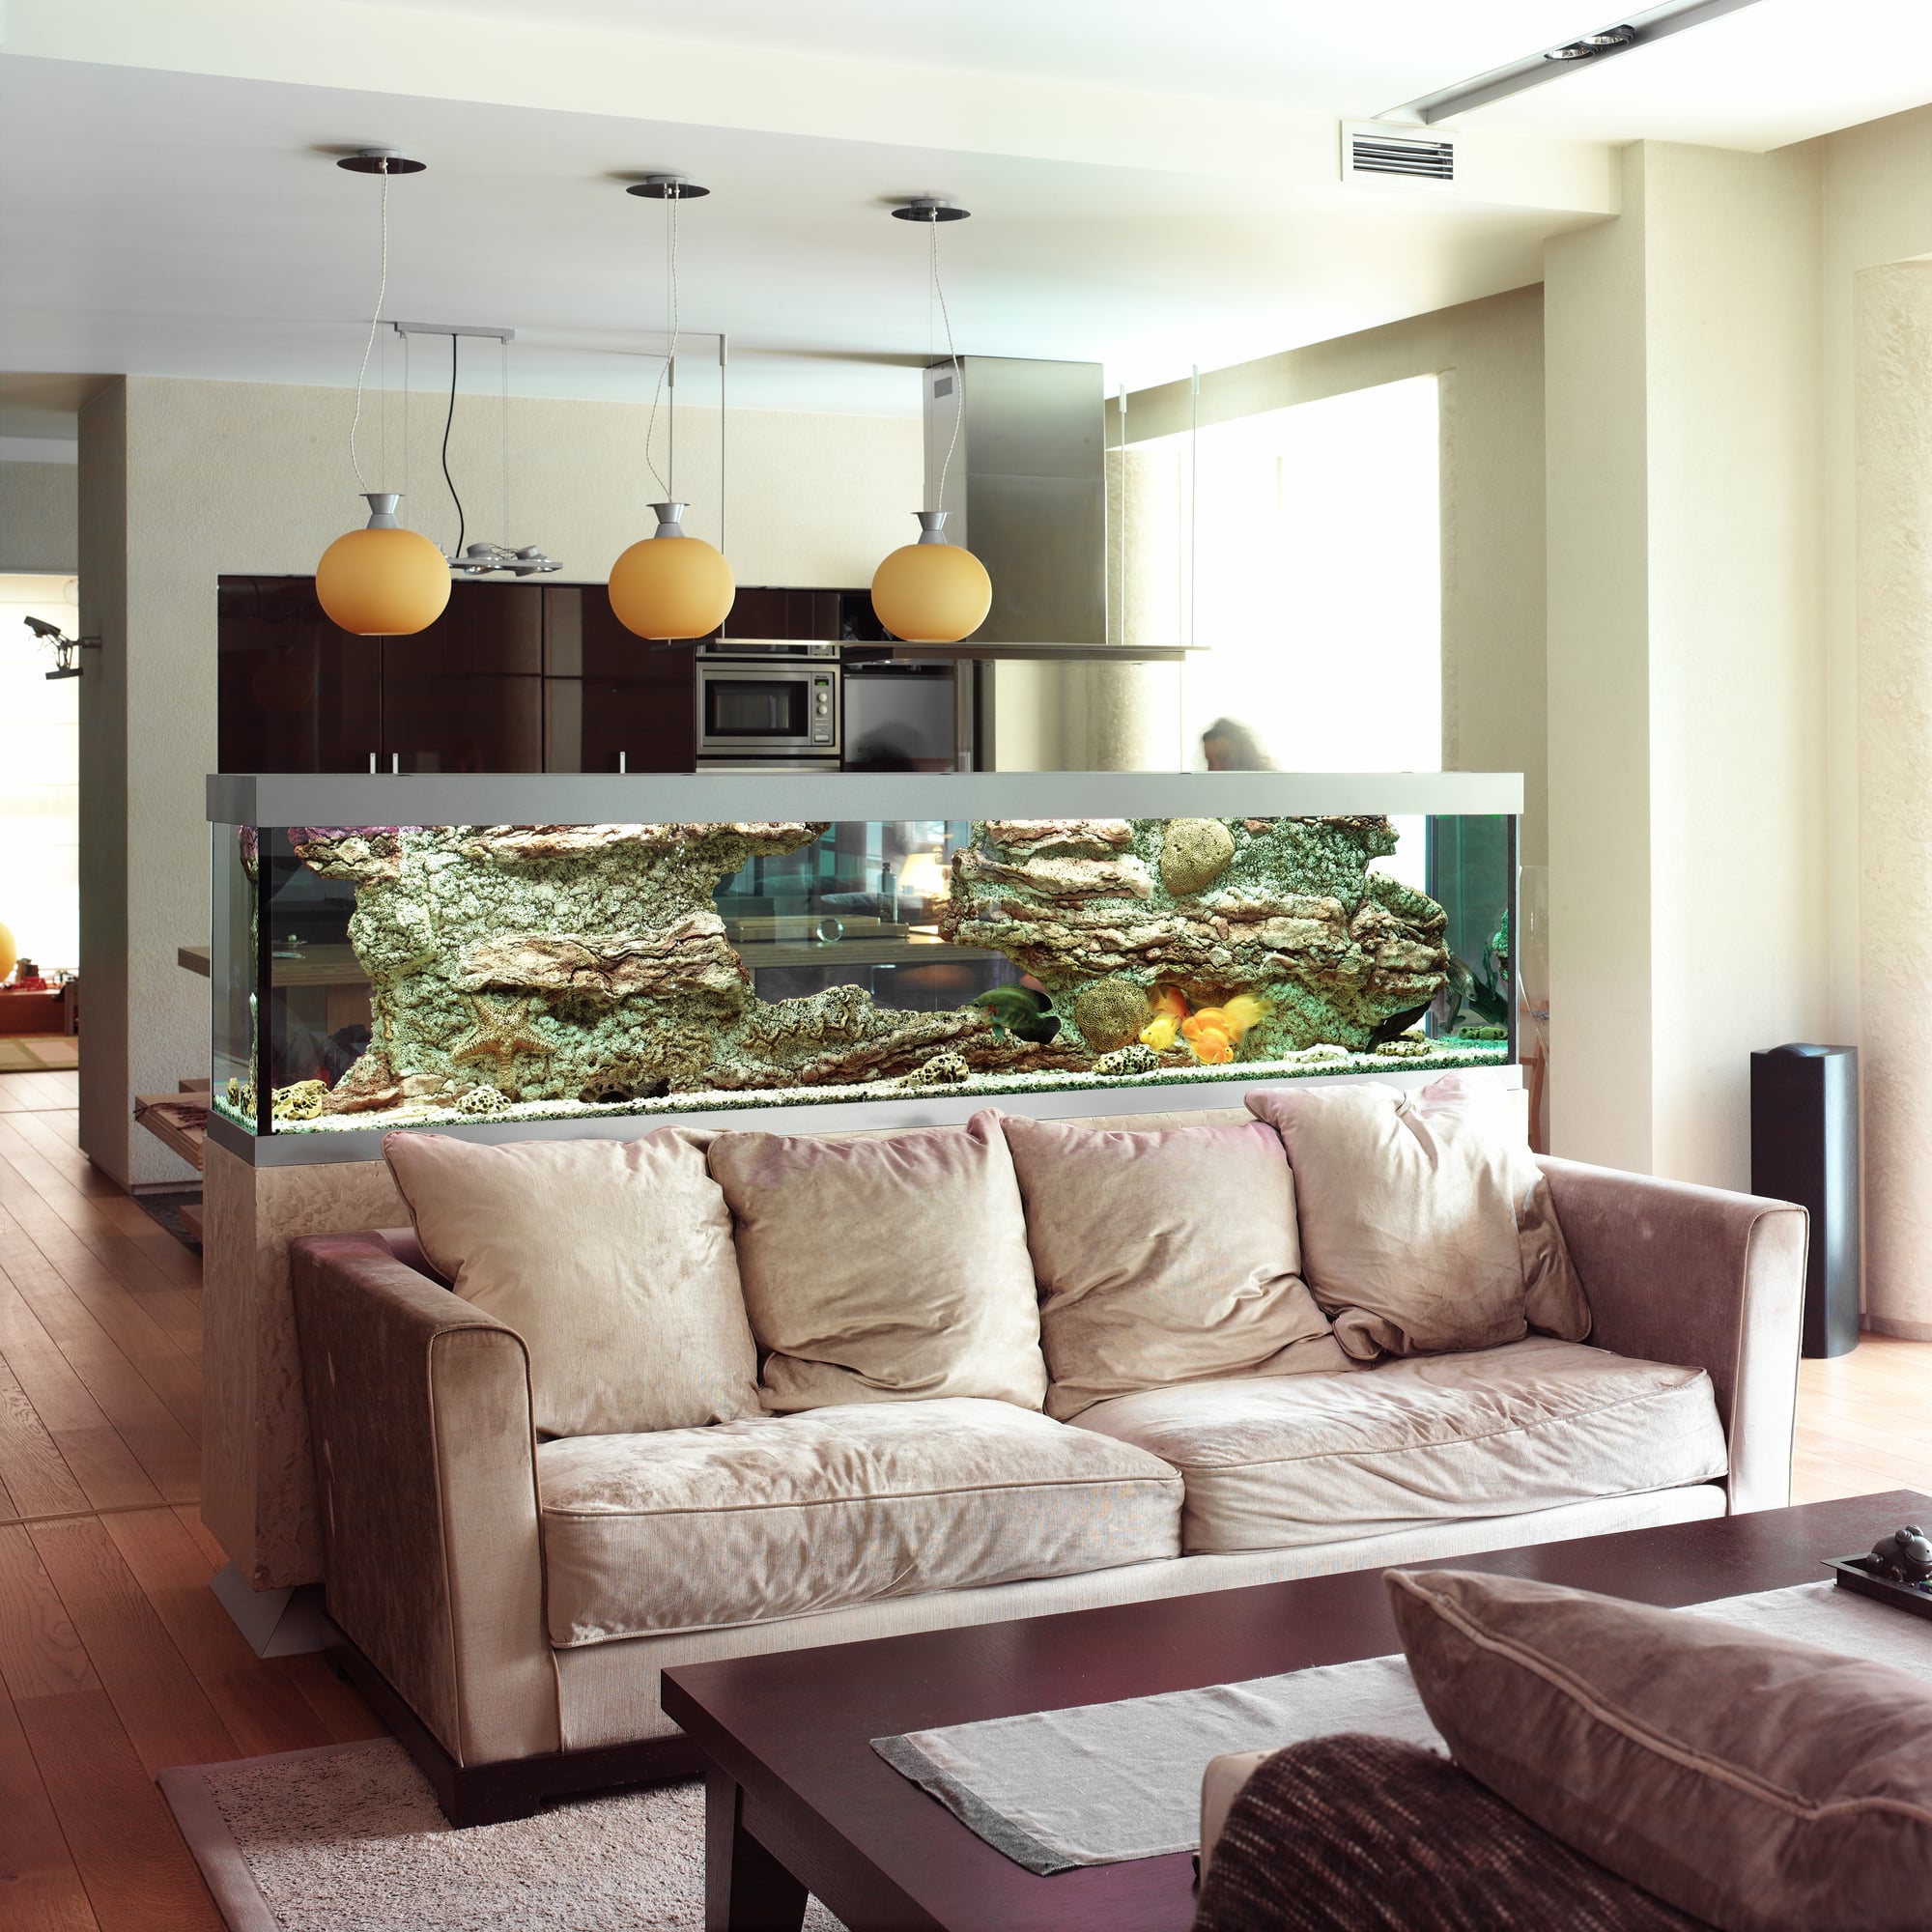 living room aquarium